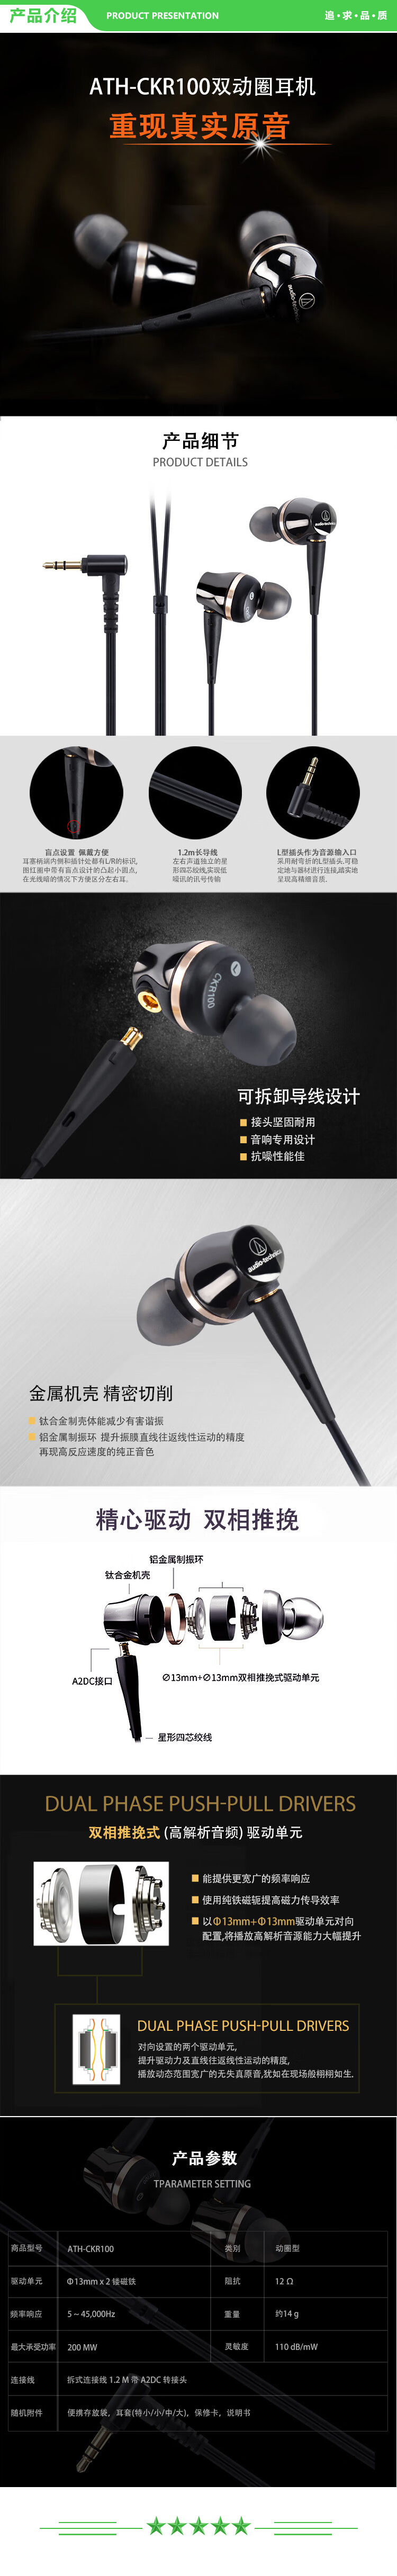 铁三角 Audio-technica ATH-CKR100 双相推挽动圈型HIFI发烧入耳式专业耳机 .jpg